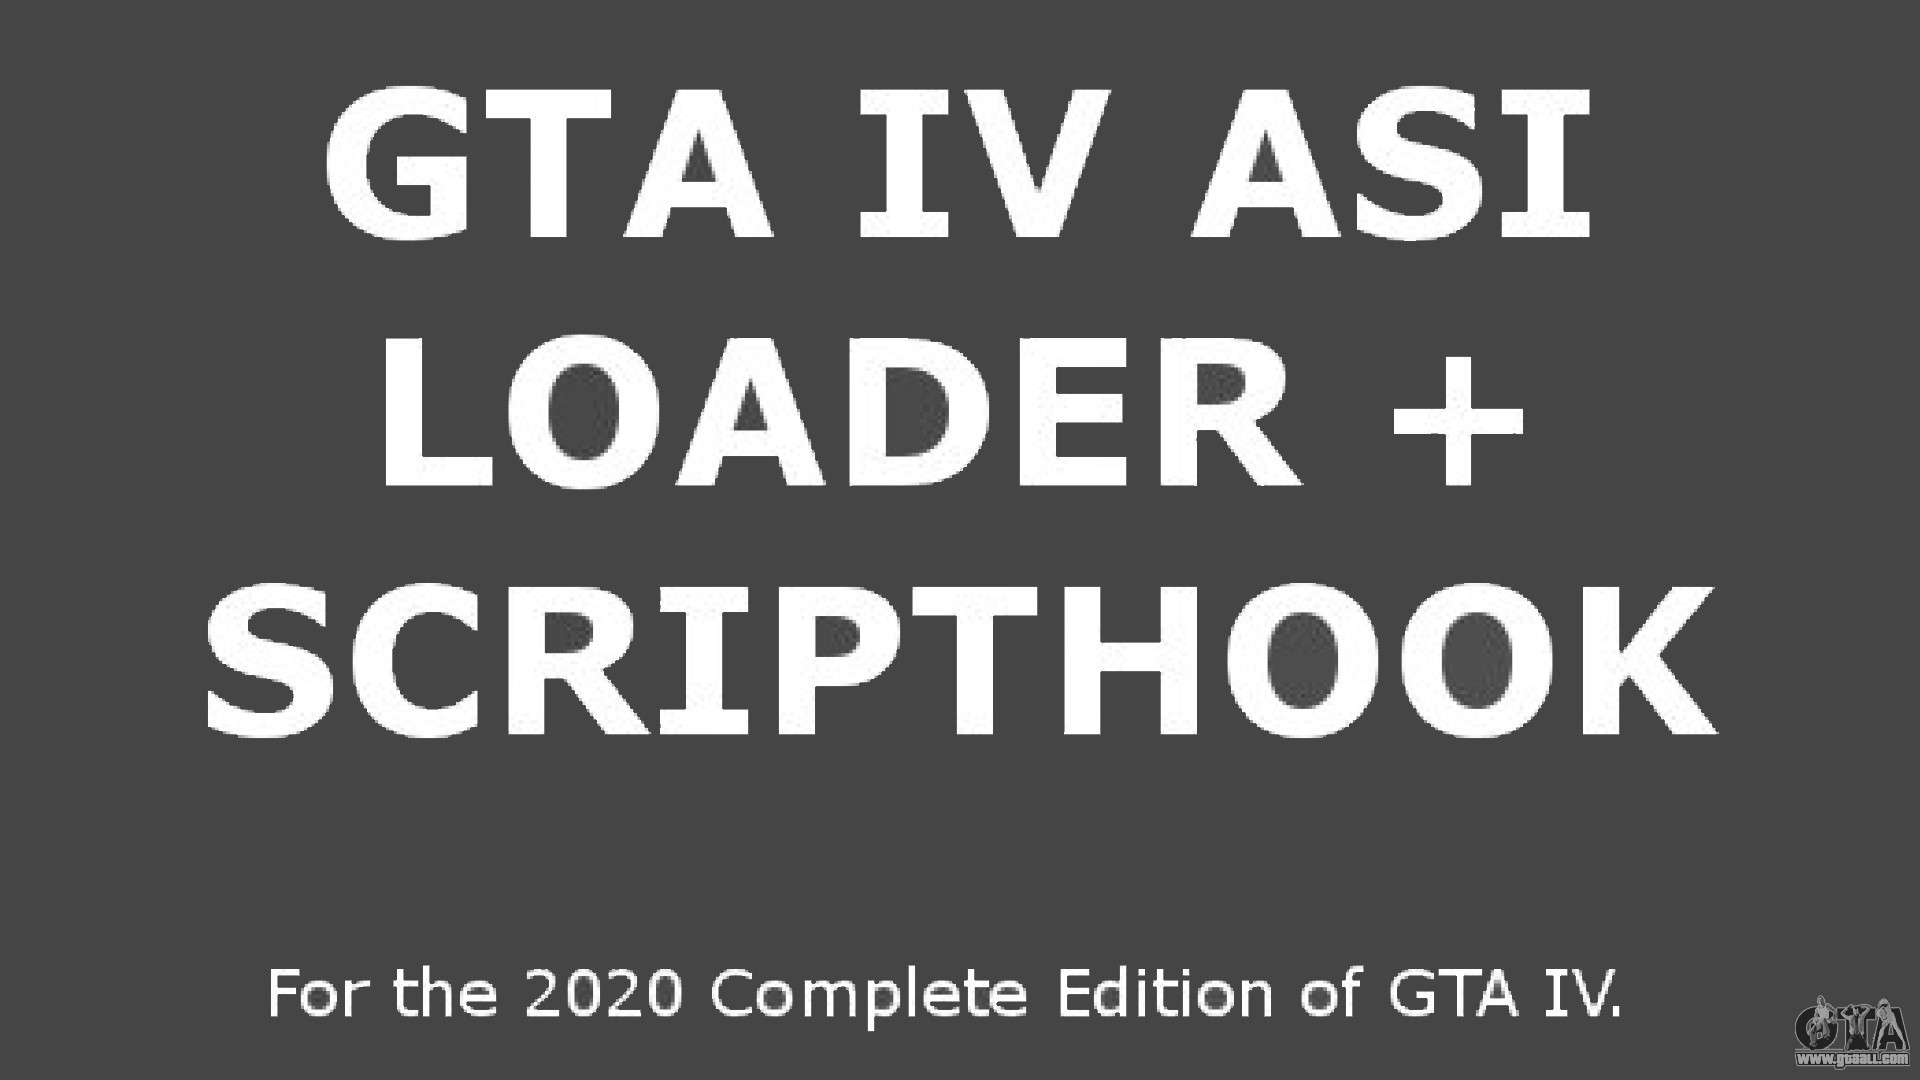 Download GTA IV Mod Installer v1.2 - Simple mod installer for GTA 4